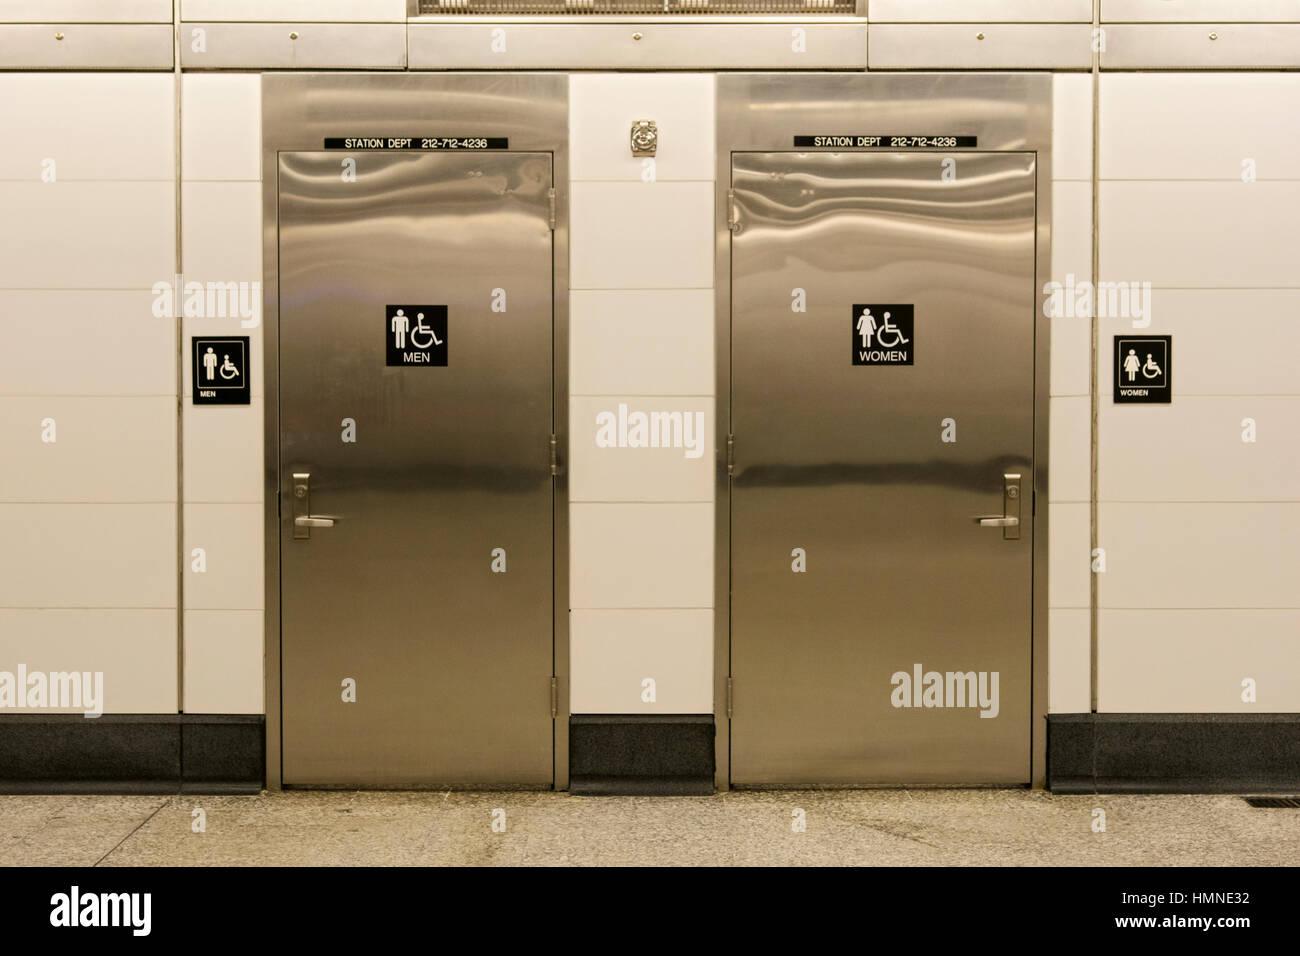 Les toilettes publiques à l'intérieur de la station de métro East 86th Street sur la nouvelle ligne sur la 2e Avenue, l'Upper East Side de Manhattan, New York City. Banque D'Images